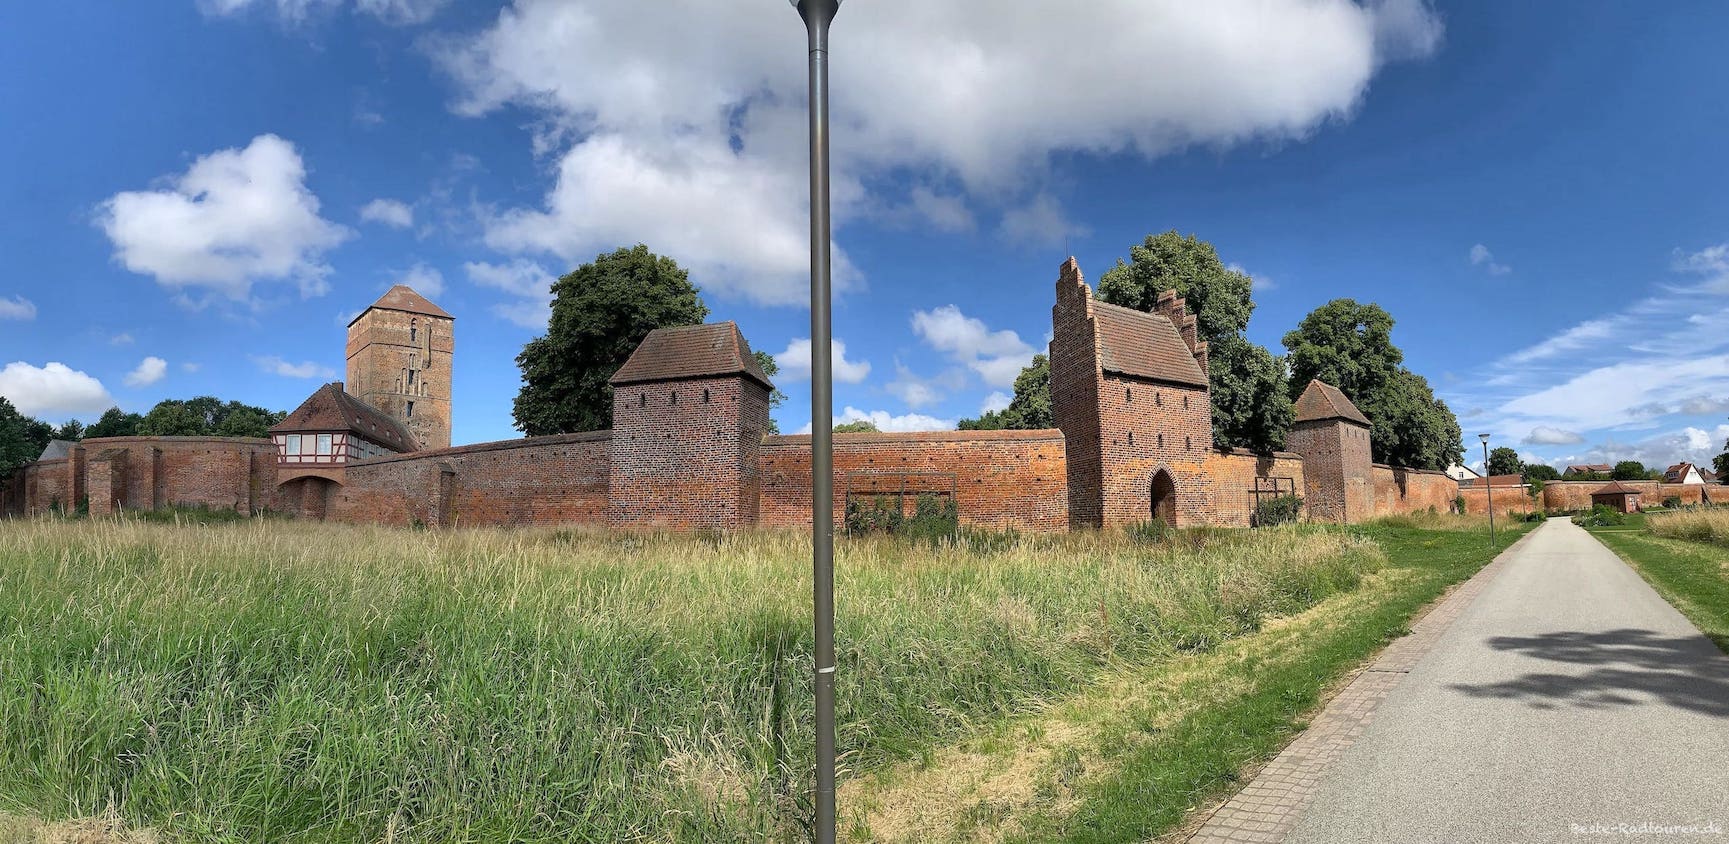 Stadtmauer von Wittstock, Foto vom Süden her - Burgturm und Museum, Wiekhäuser